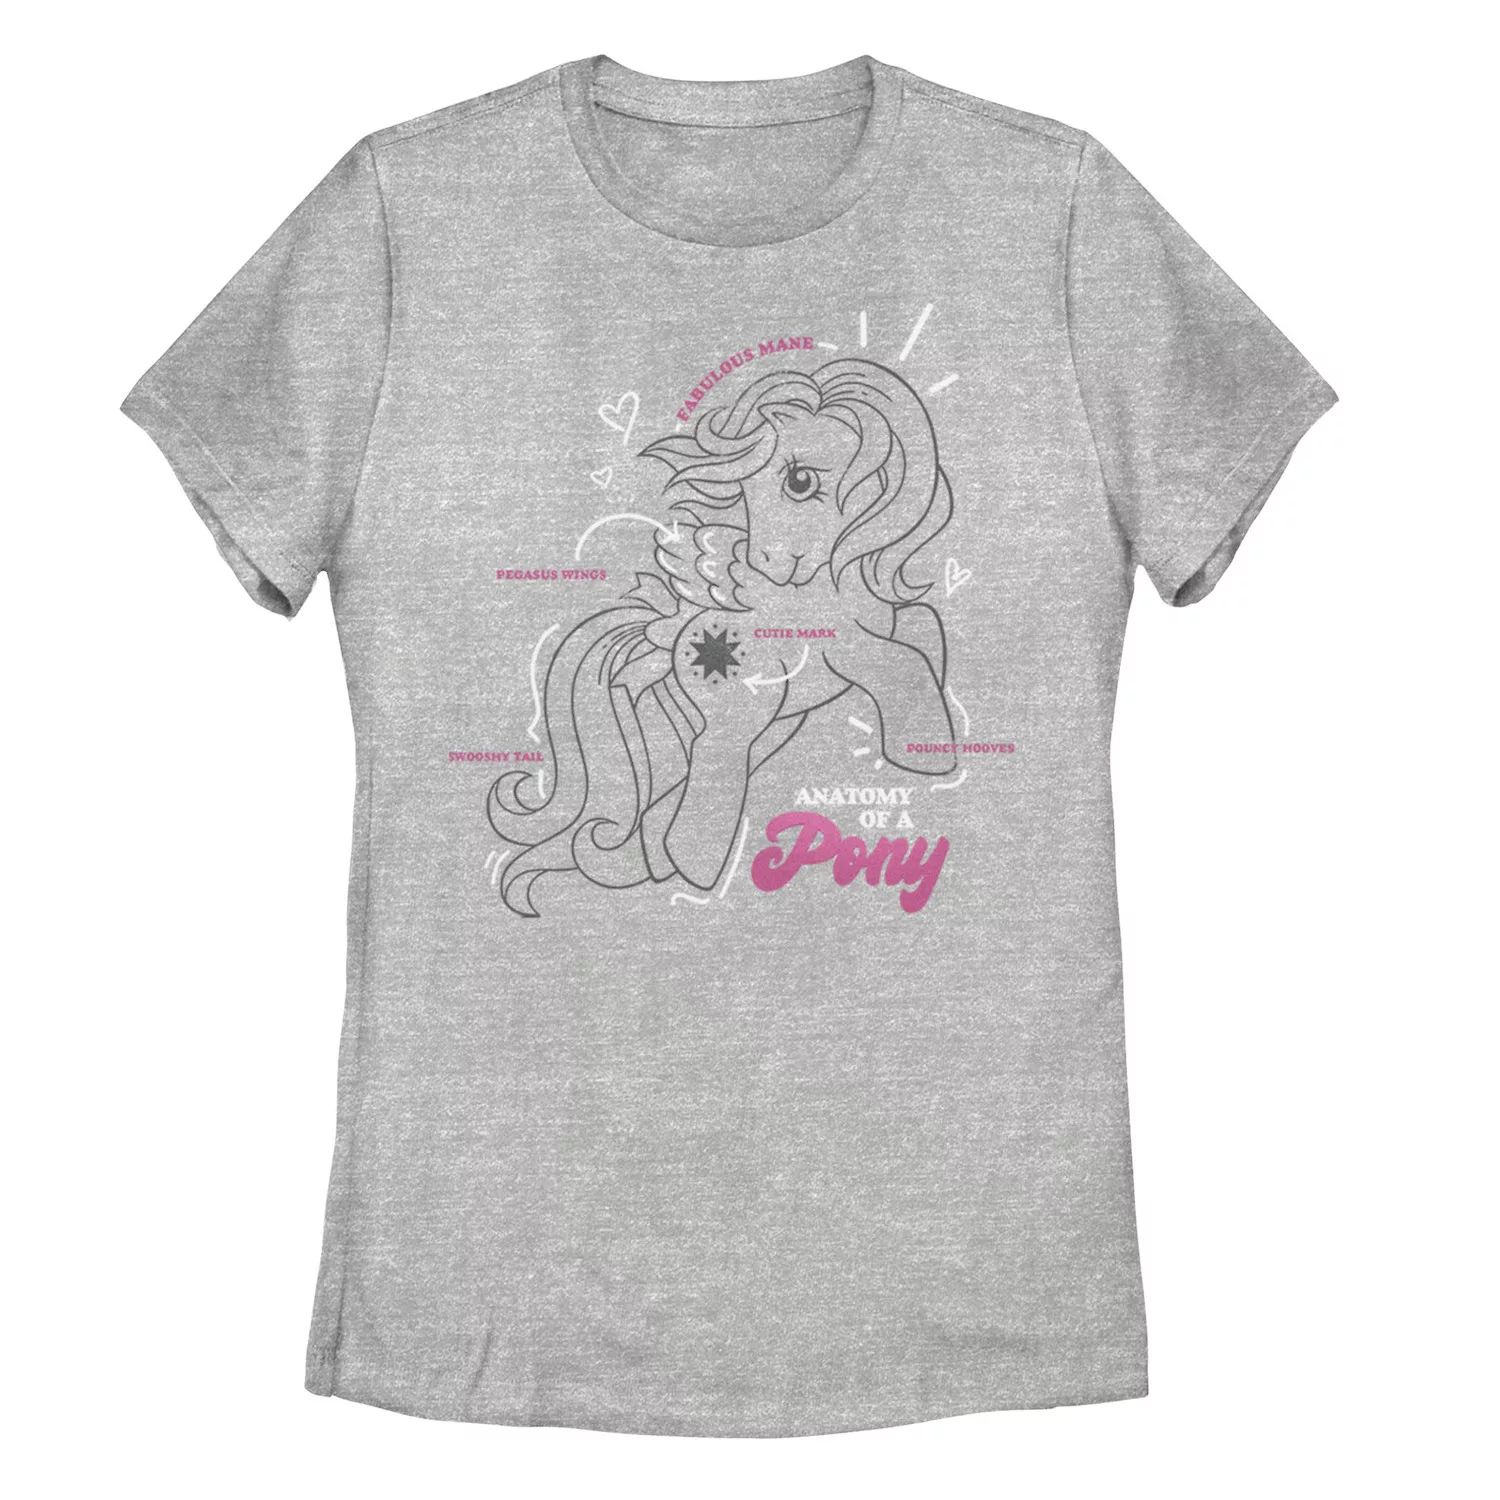 Анатомия футболки с рисунком пони My Little Pony для юниоров My Little Pony футболка с рисунком my little pony butterscotch для девочек 7–16 лет my little pony